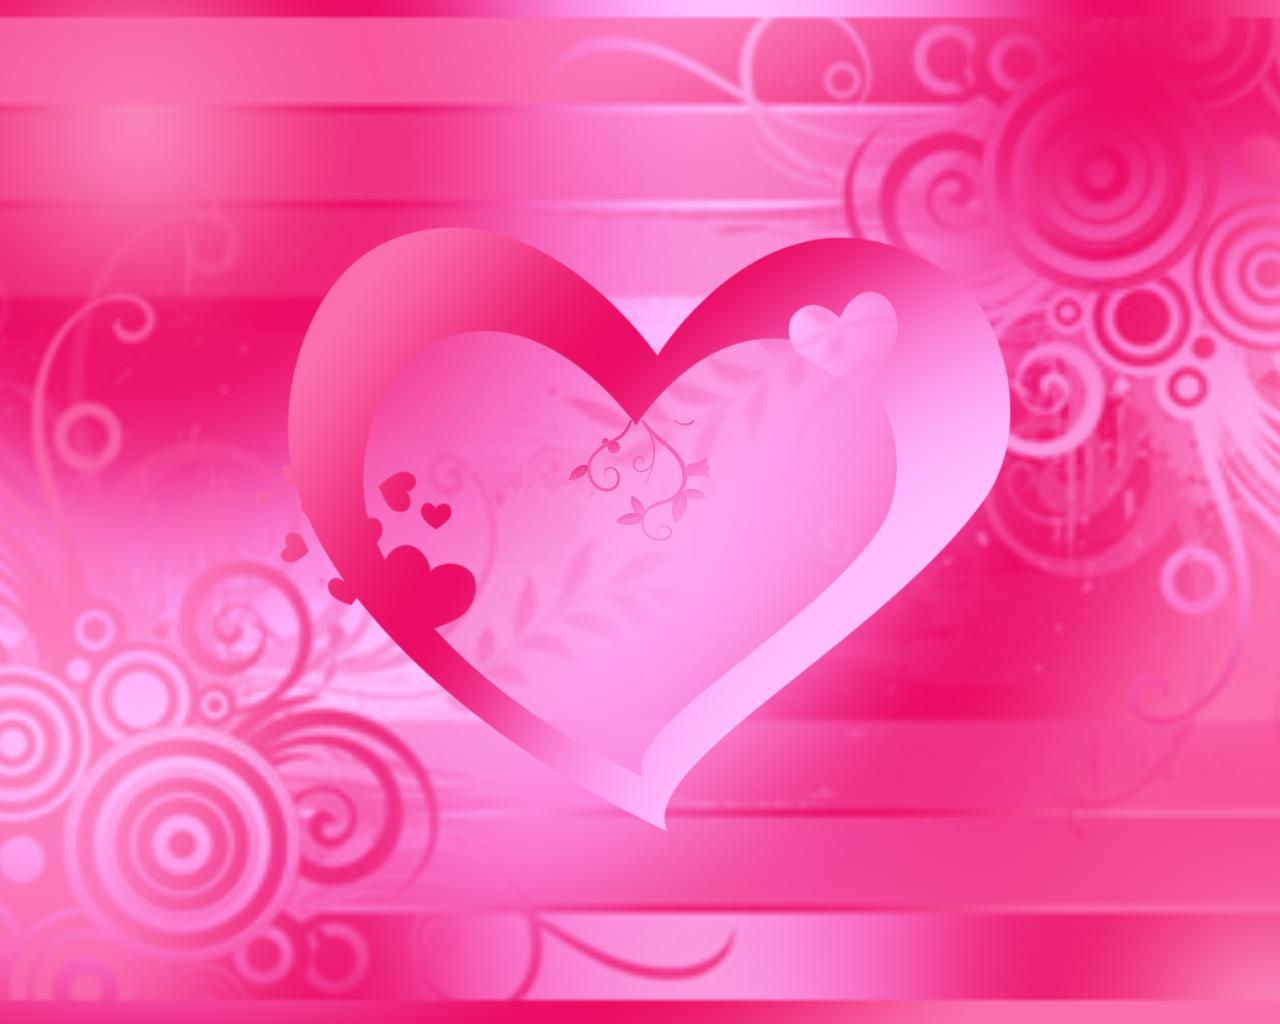 71+] Pink Heart Wallpapers - WallpaperSafari